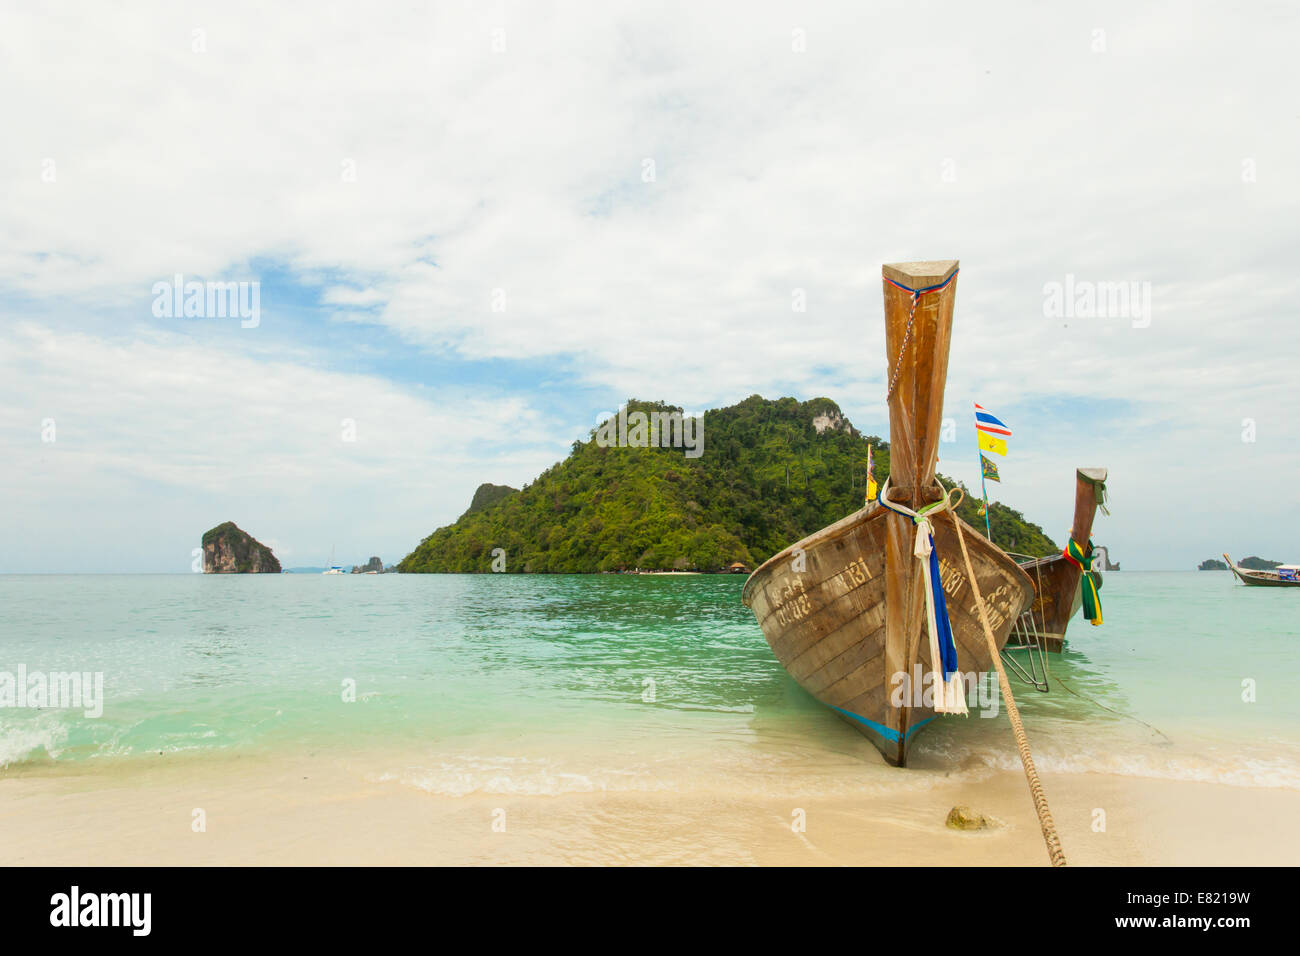 Tailandese tradizionale barca dalla coda lunga con isola thailandese in background Foto Stock